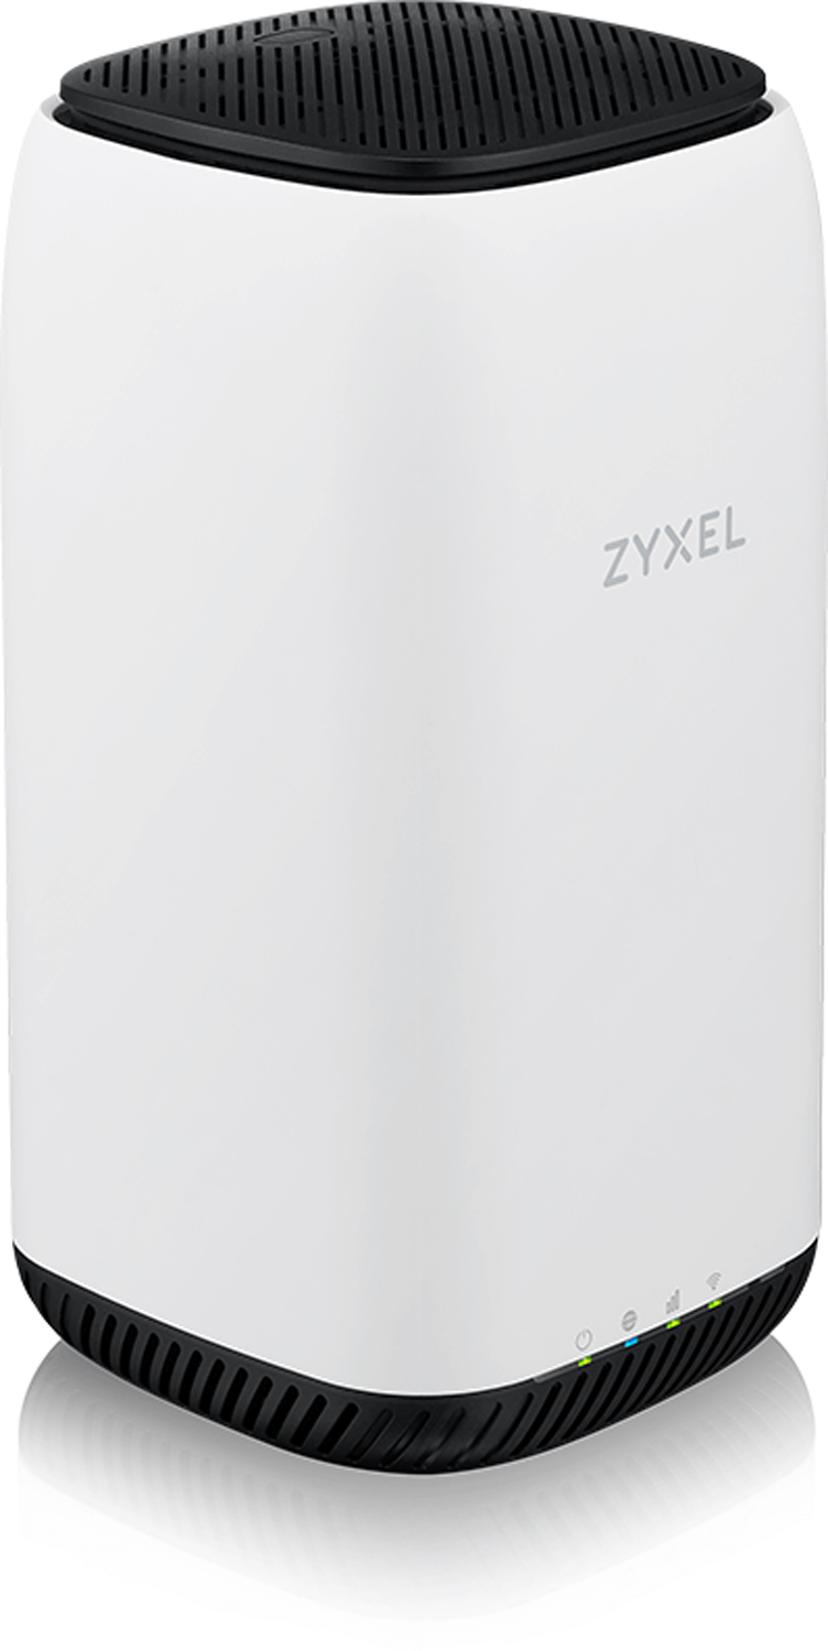 Zyxel Paketti, joka sisältää Zyxel NR5101 -reitittimen ja Poynting XPOL-2-5G -antennin